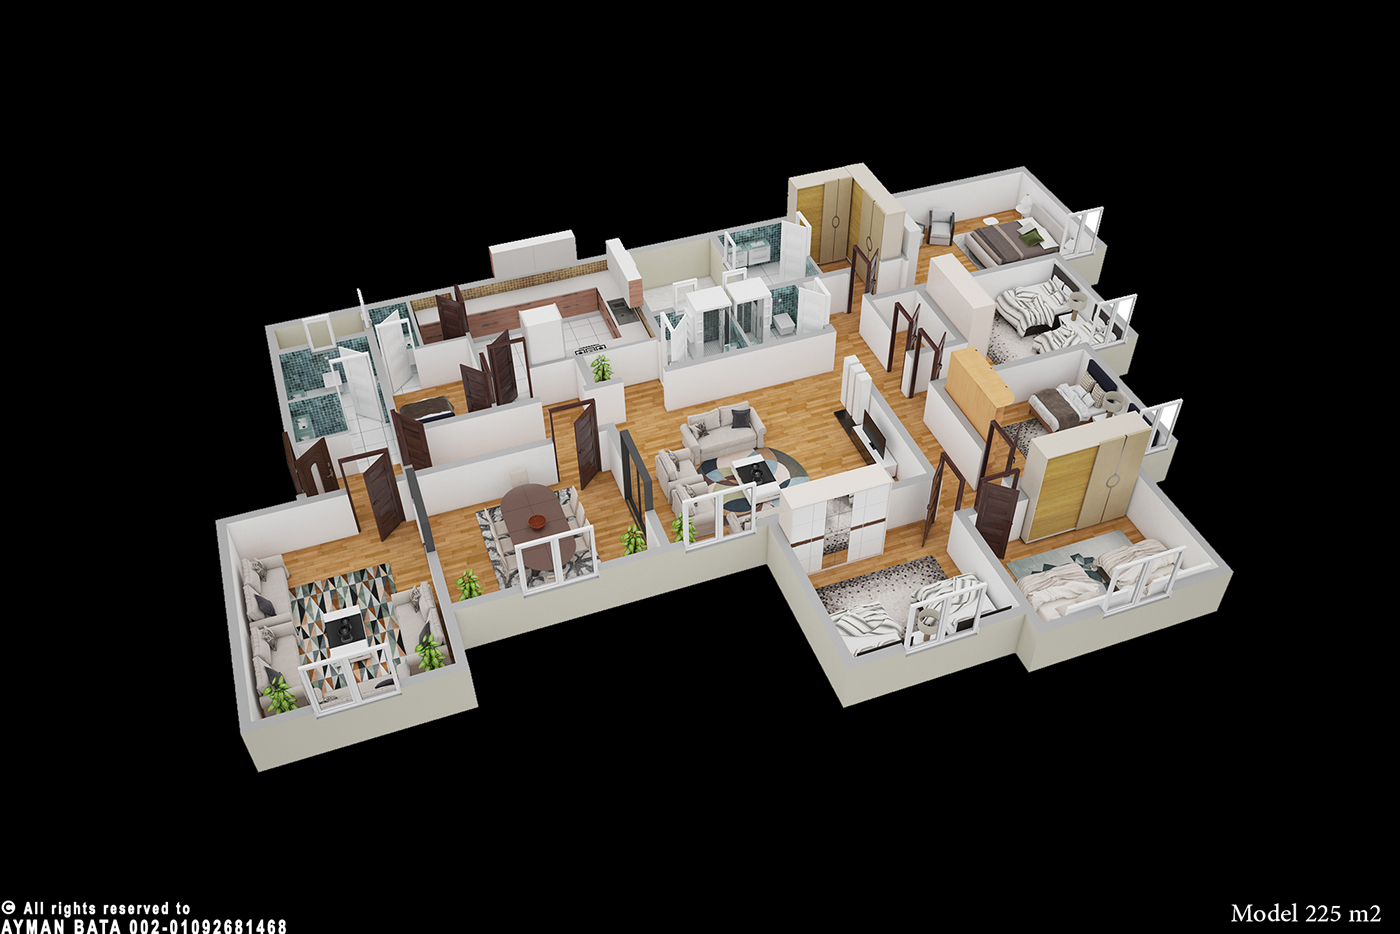 design Landscape modeling skp 3dmax Interior WorkingDrawings TEAMWORK hardwork